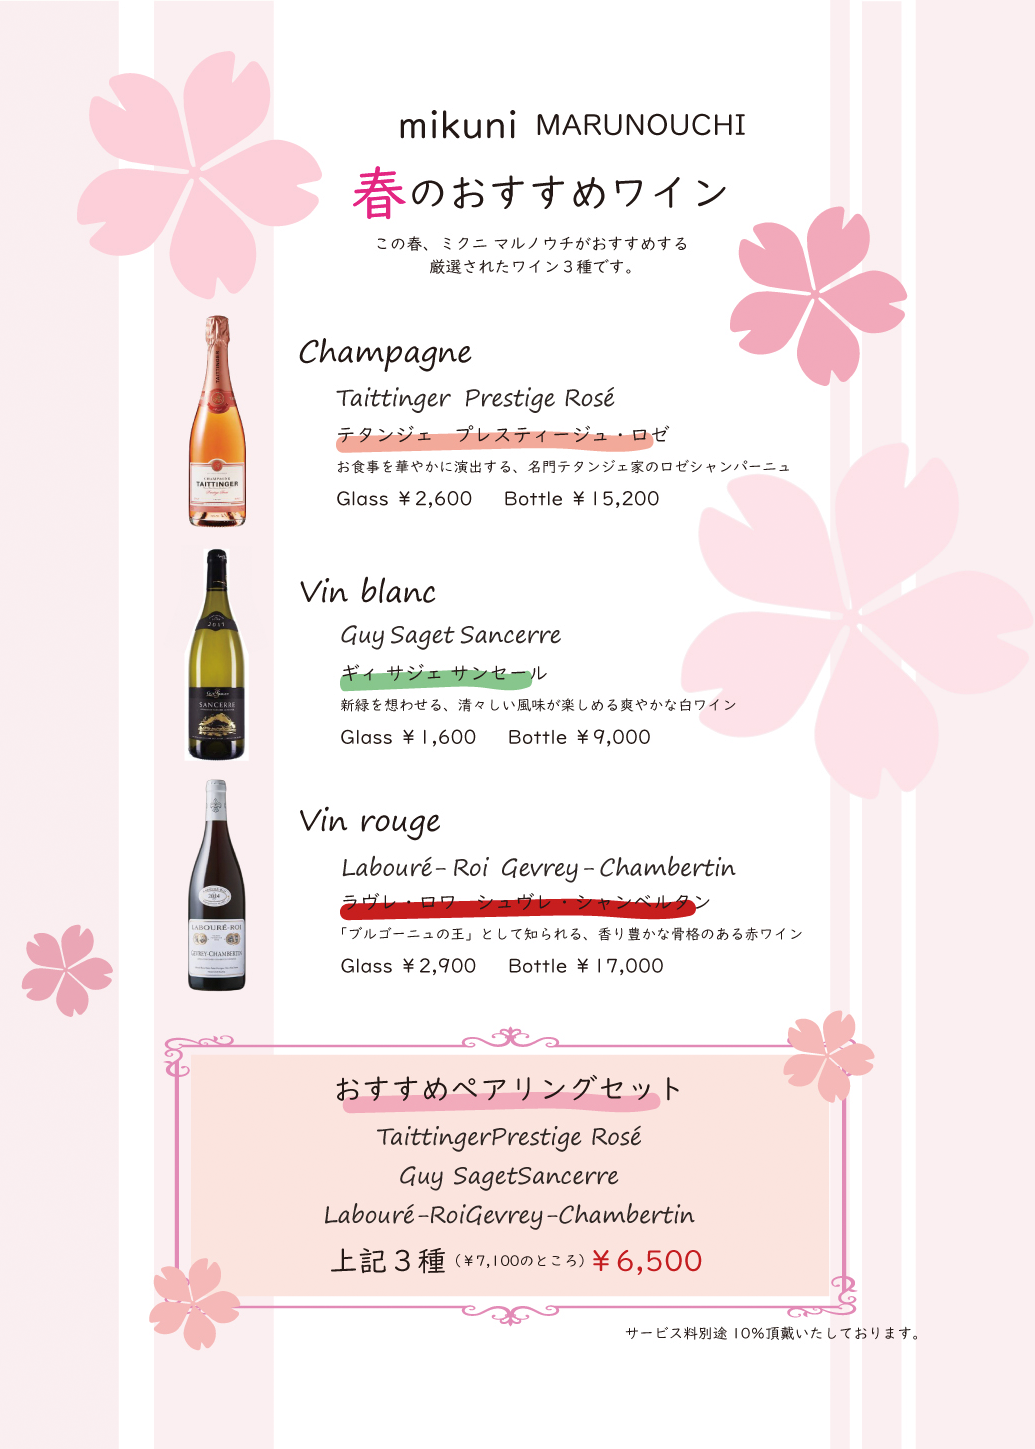 mikuni MARUNOUCHI 春のおすすめワイン